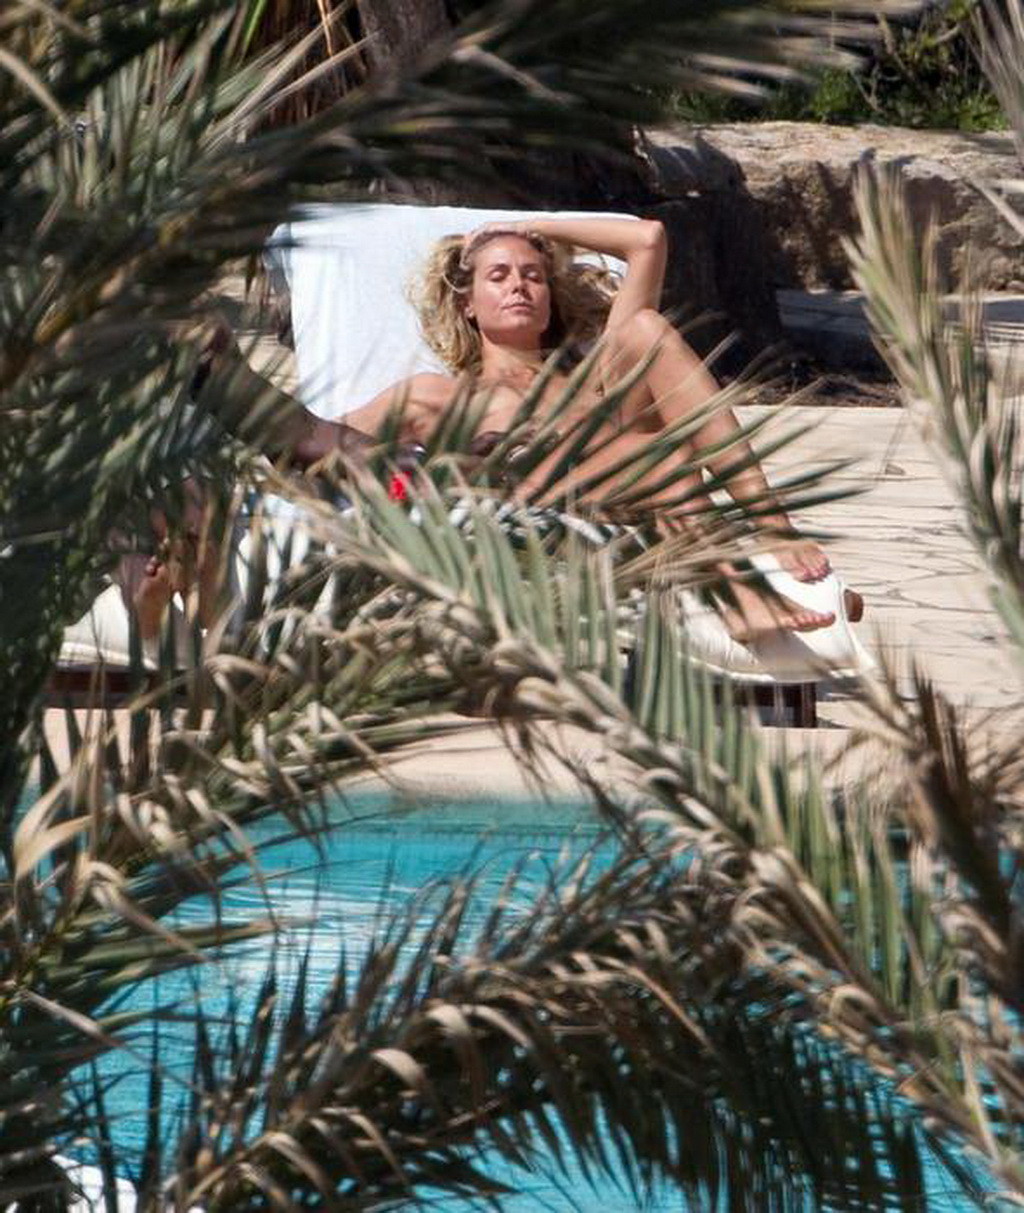 Heidi Klum caught sunbathing topless on vacation in Ibiza #75293237